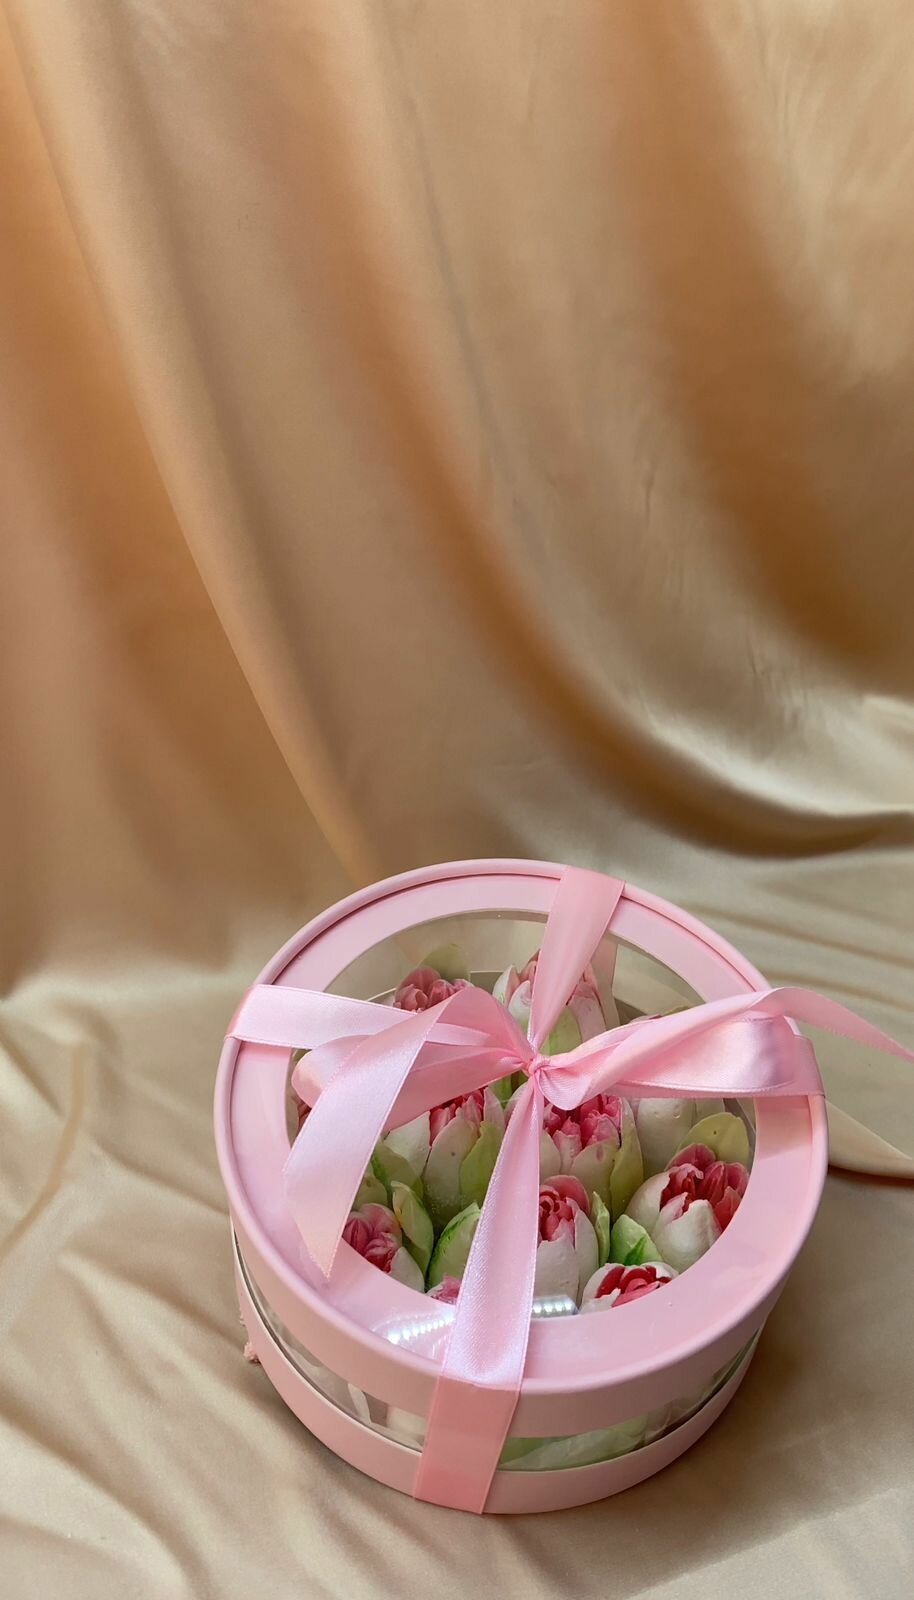 Зефирные цветы ручной работы тюльпаны в подарочной упаковке на день рождение, день всех влюбленных, 8 Марта - фотография № 4